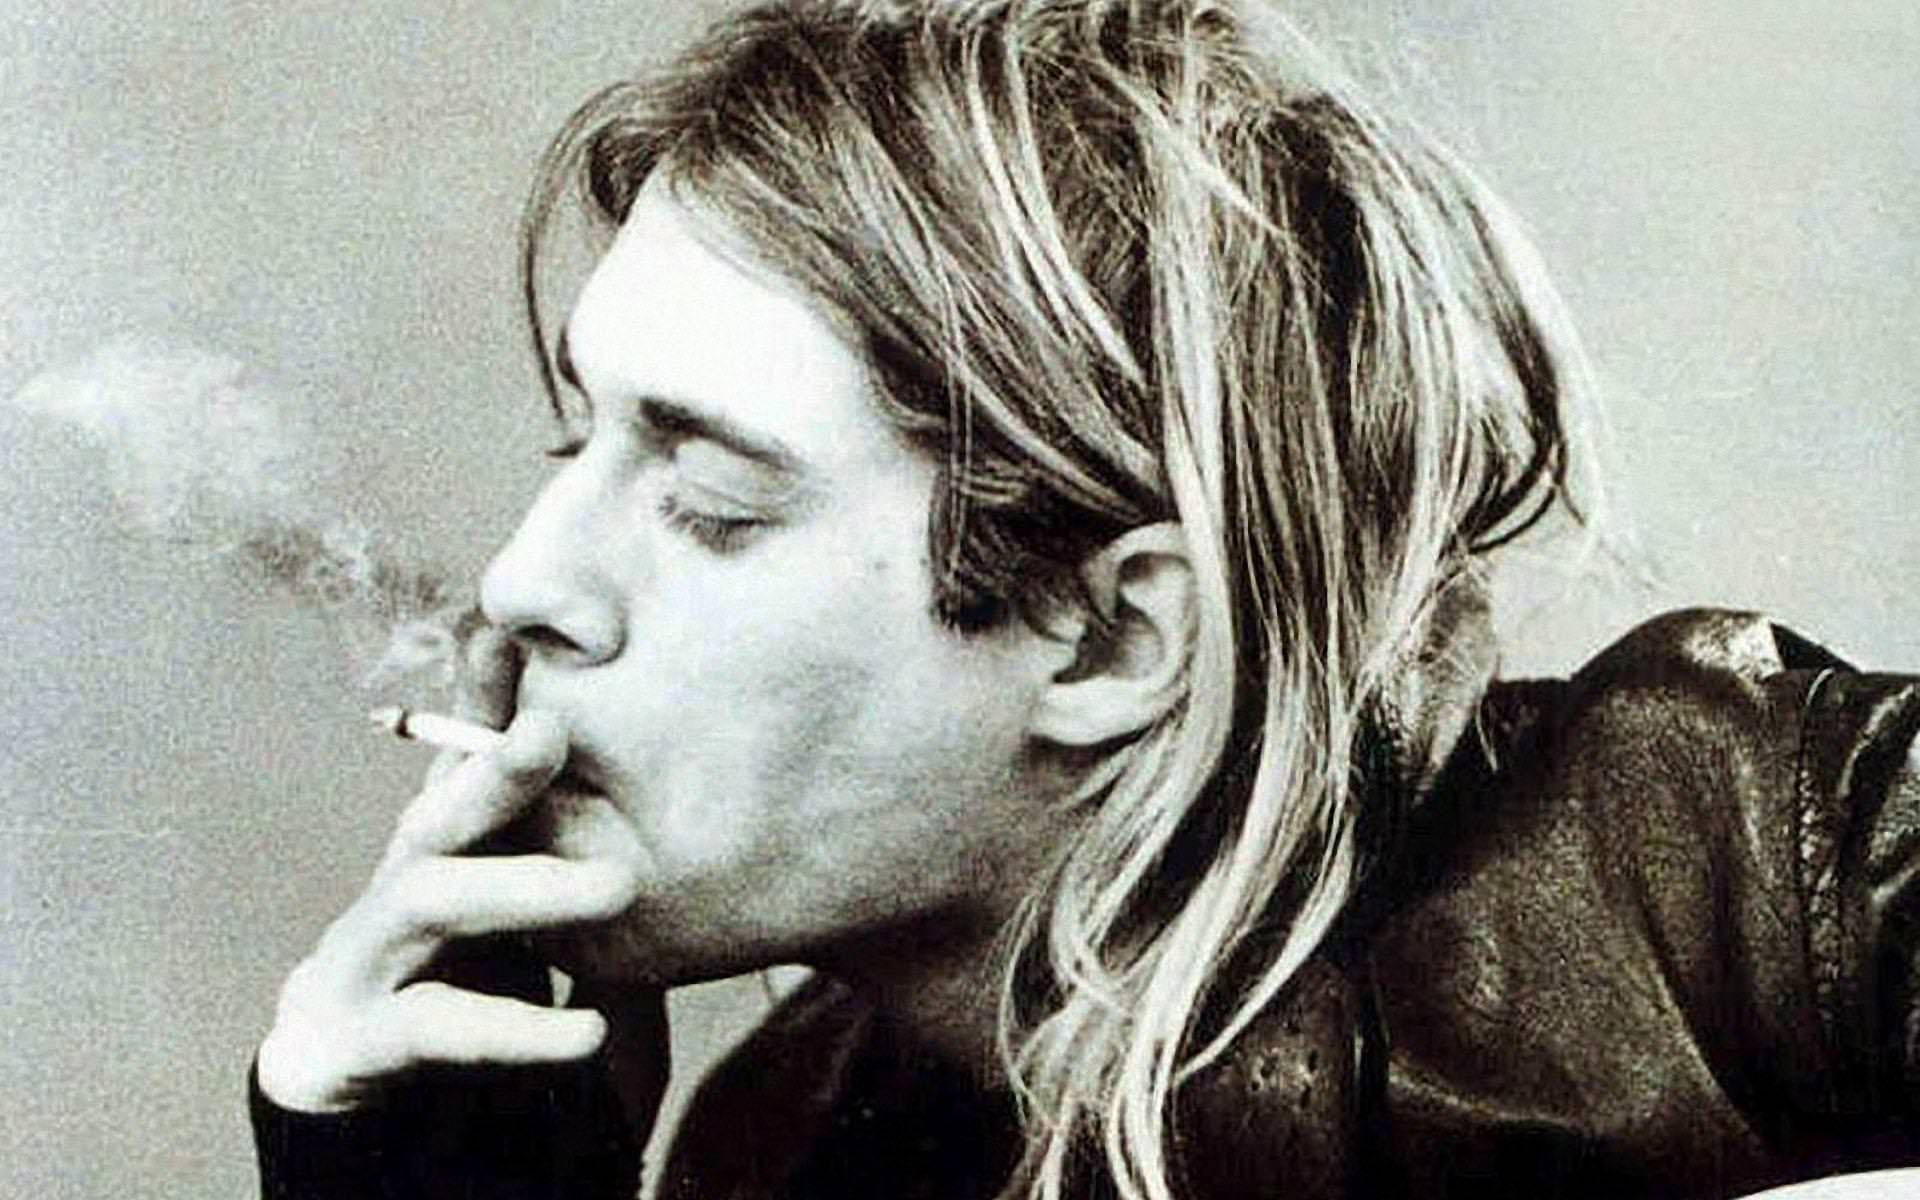 Курт Кобейн курит сигарету